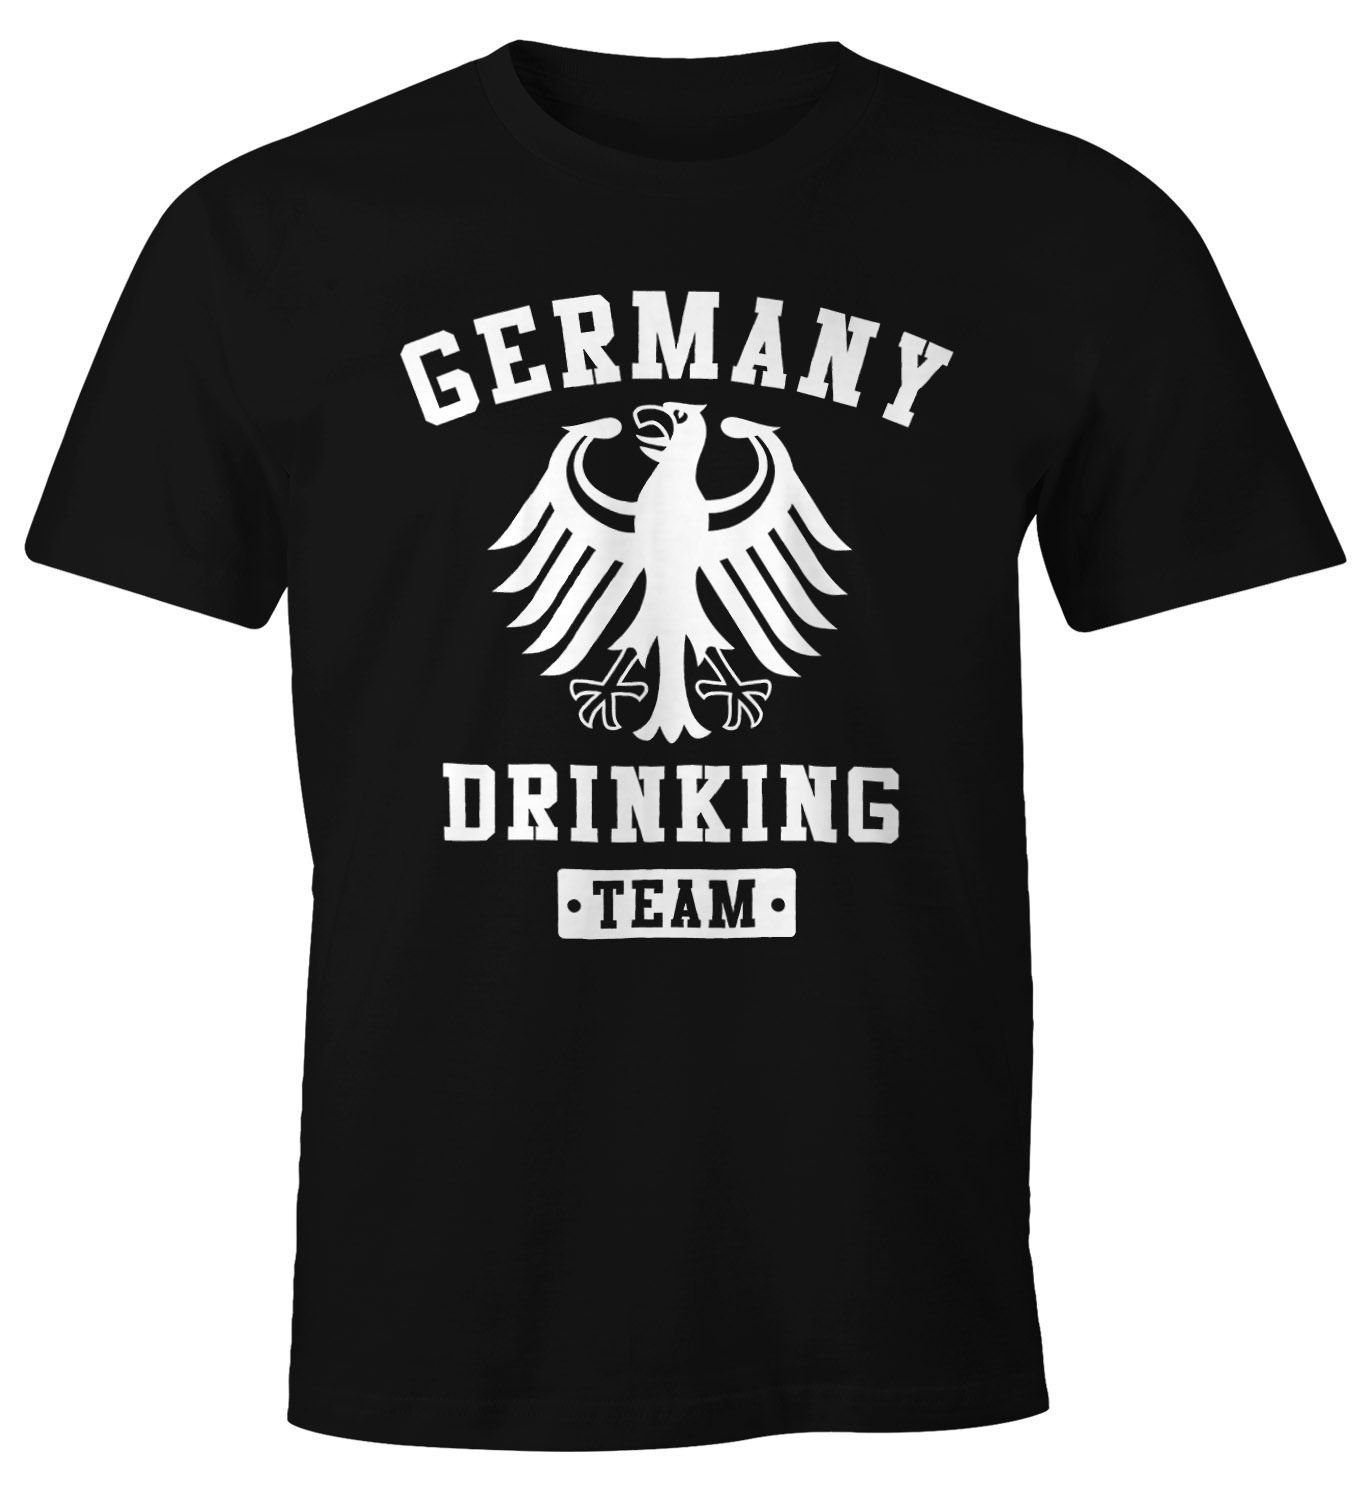 MoonWorks Print-Shirt Team Fun-Shirt Germany mit Moonworks® Drinking Print schwarz Herren T-Shirt Deutschland Adler Bier